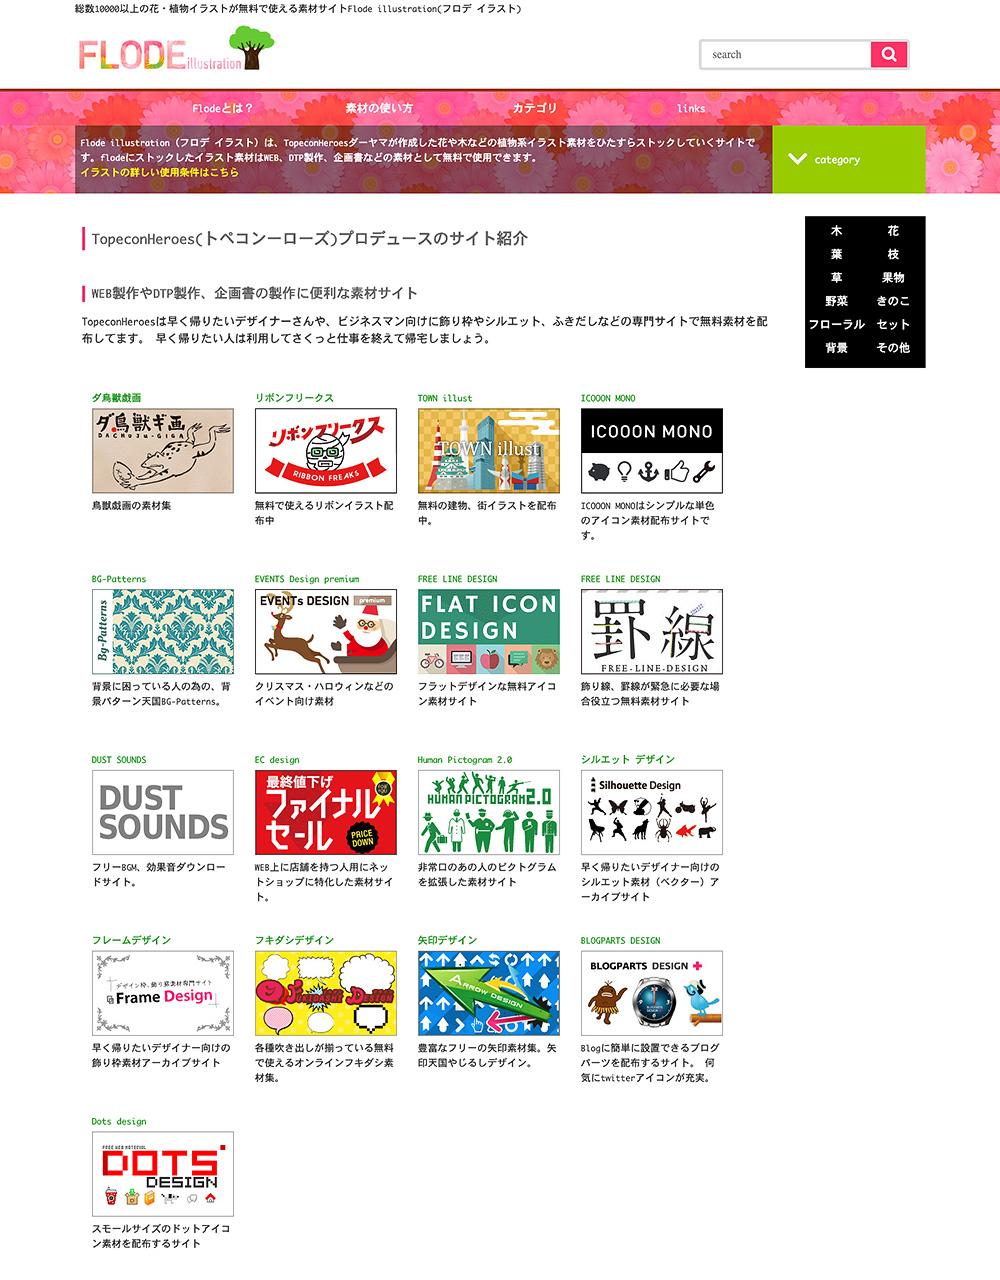 ブログで使っているその画像は本当に大丈夫 マーケティングブログ 名古屋 アライブ株式会社